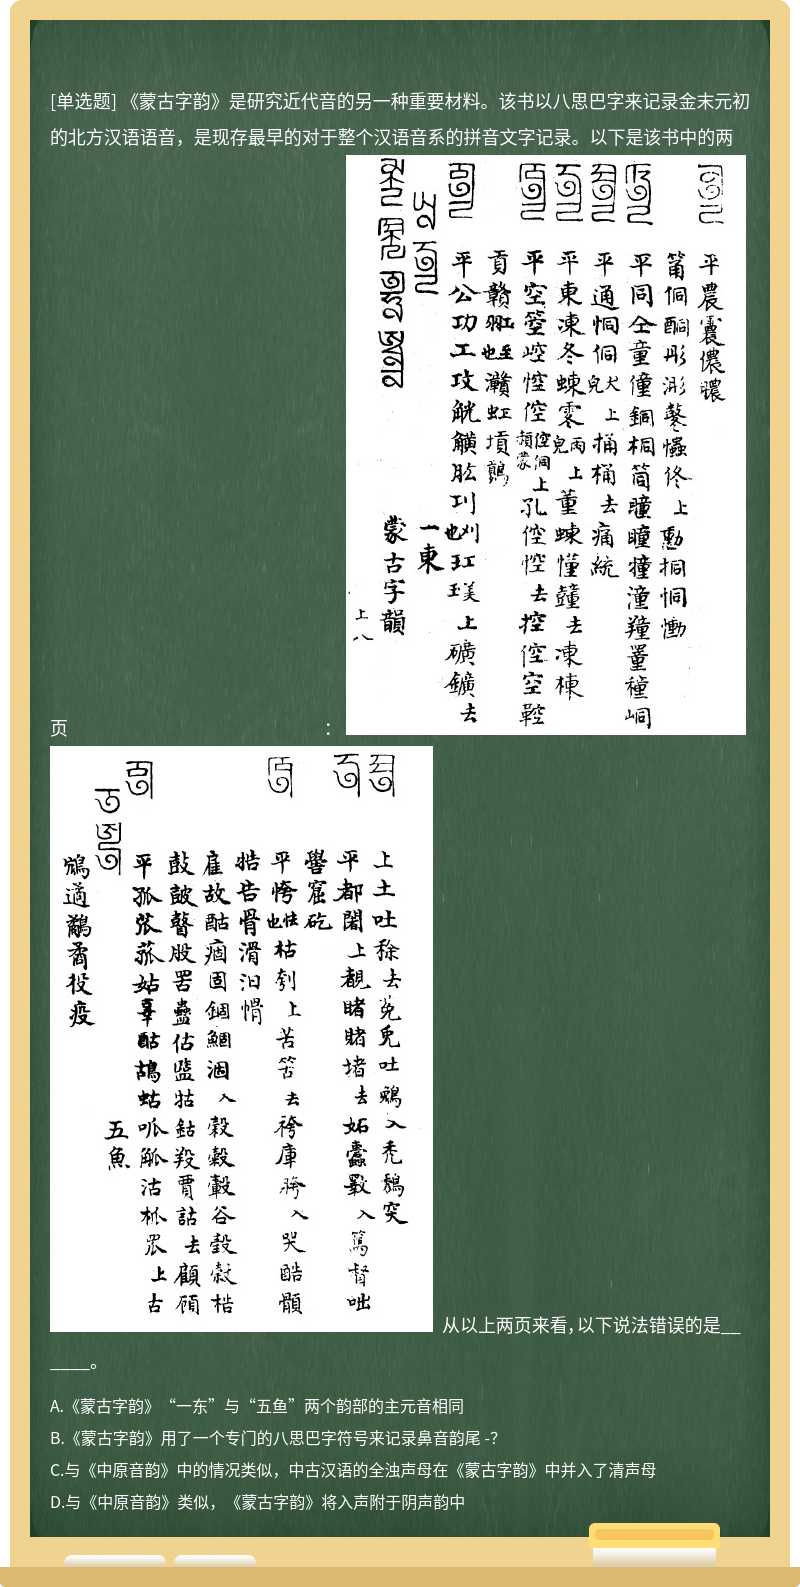 《蒙古字韵》是研究近代音的另一种重要材料。该书以八思巴字来记录金末元初的北方汉语语音，是现存最早的对于整个汉语音系的拼音文字记录。以下是该书中的两页：   从以上两页来看，以下说法错误的是______。